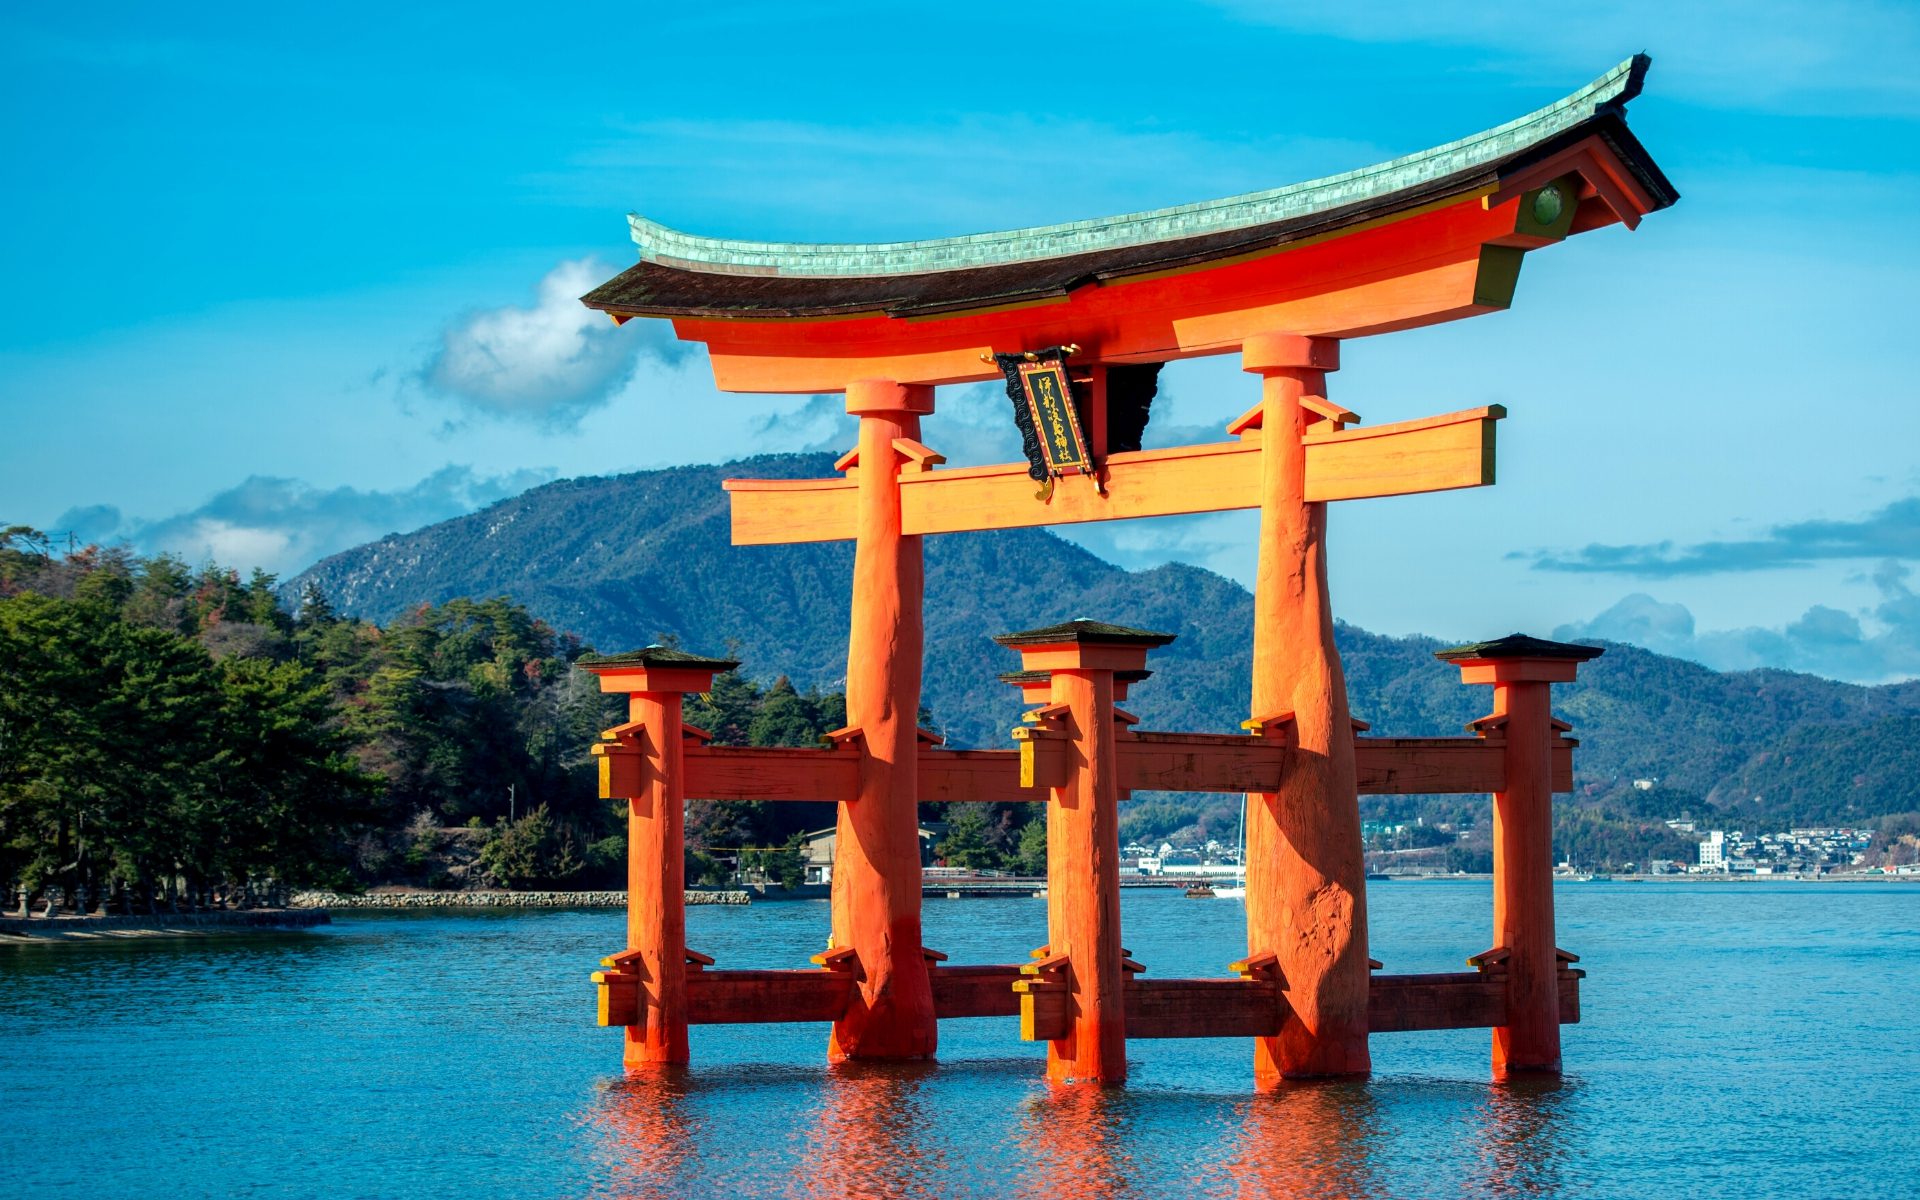 Votre prochain voyage au Japon pourrait être à moitié prix